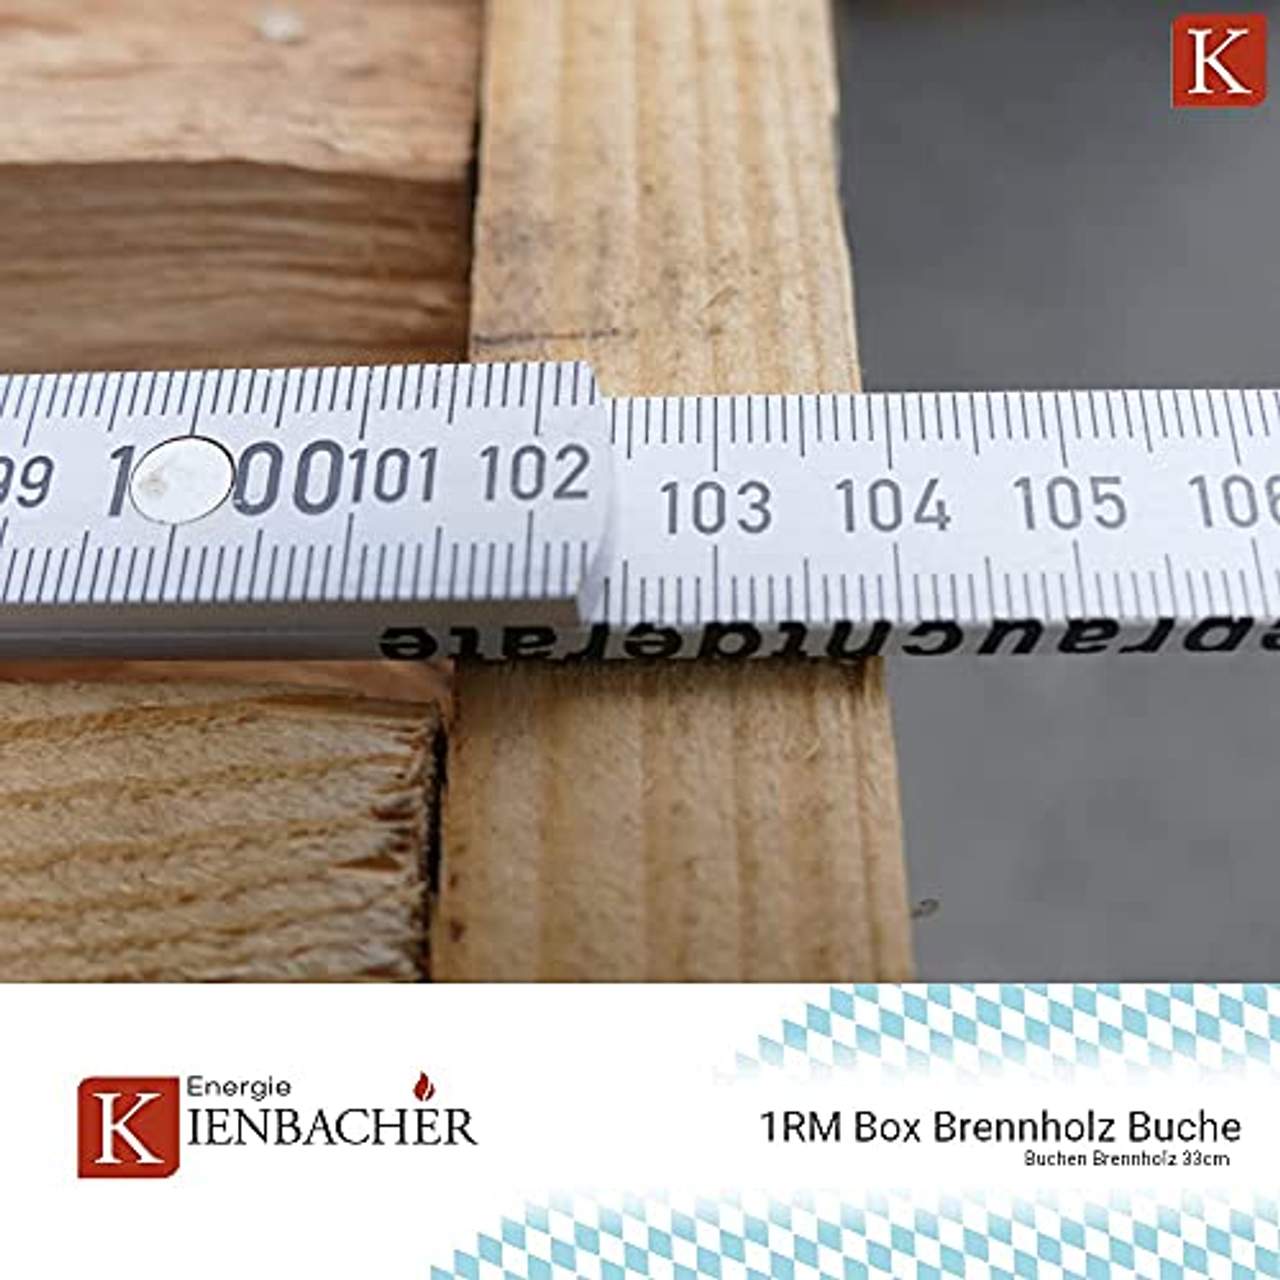 Buche 33cm RM Box Brennholz trocken Kaminholz ofenfertig Holz